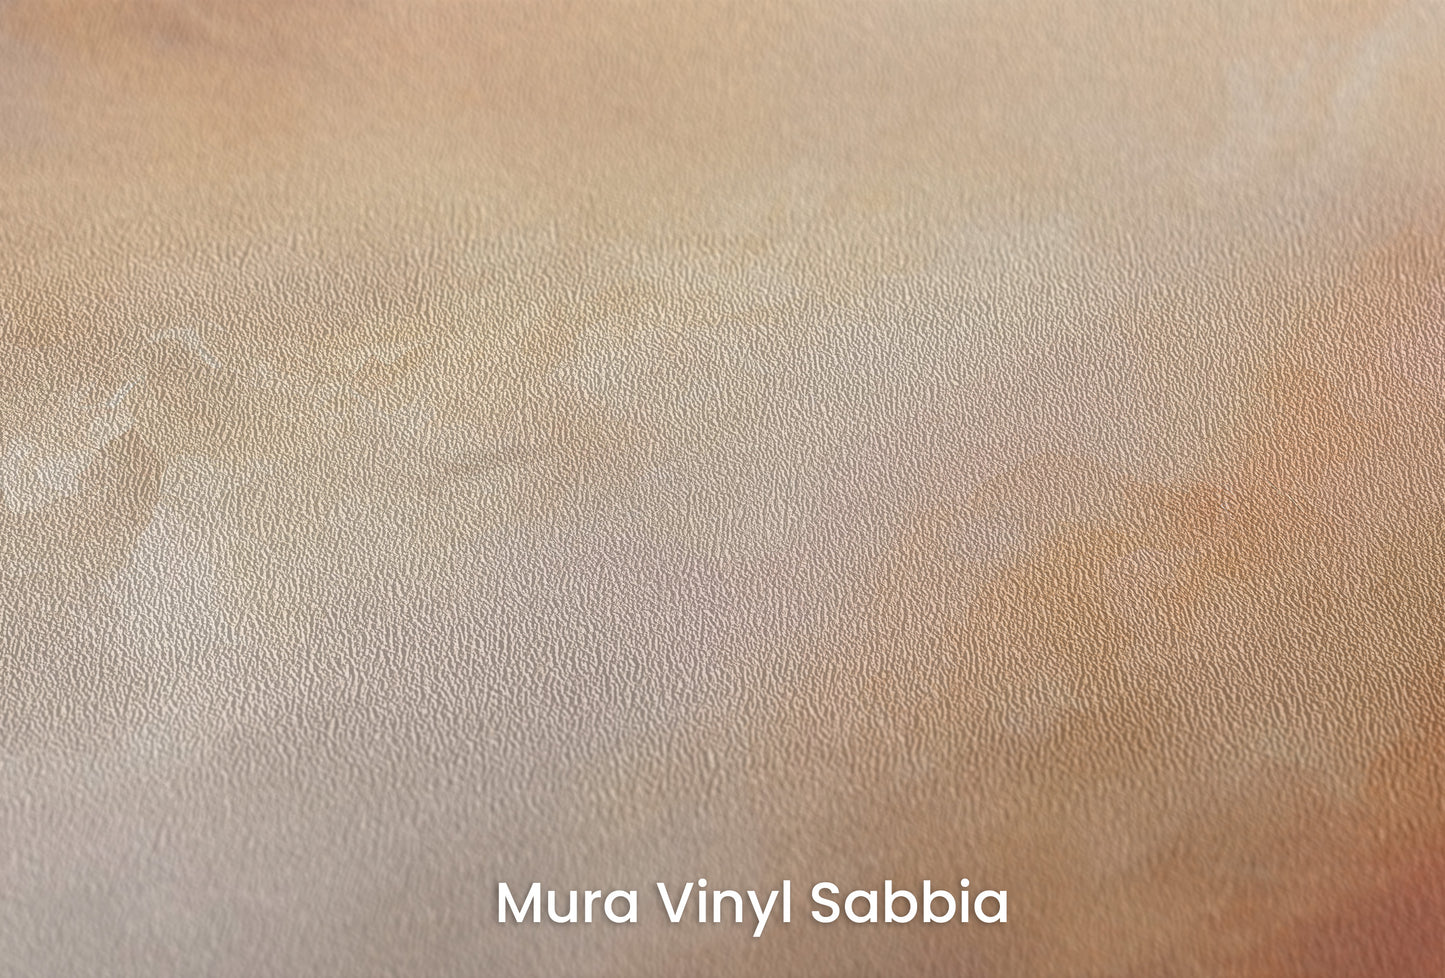 Zbliżenie na artystyczną fototapetę o nazwie AMBER SUNSET SWIRLS na podłożu Mura Vinyl Sabbia struktura grubego ziarna piasku.